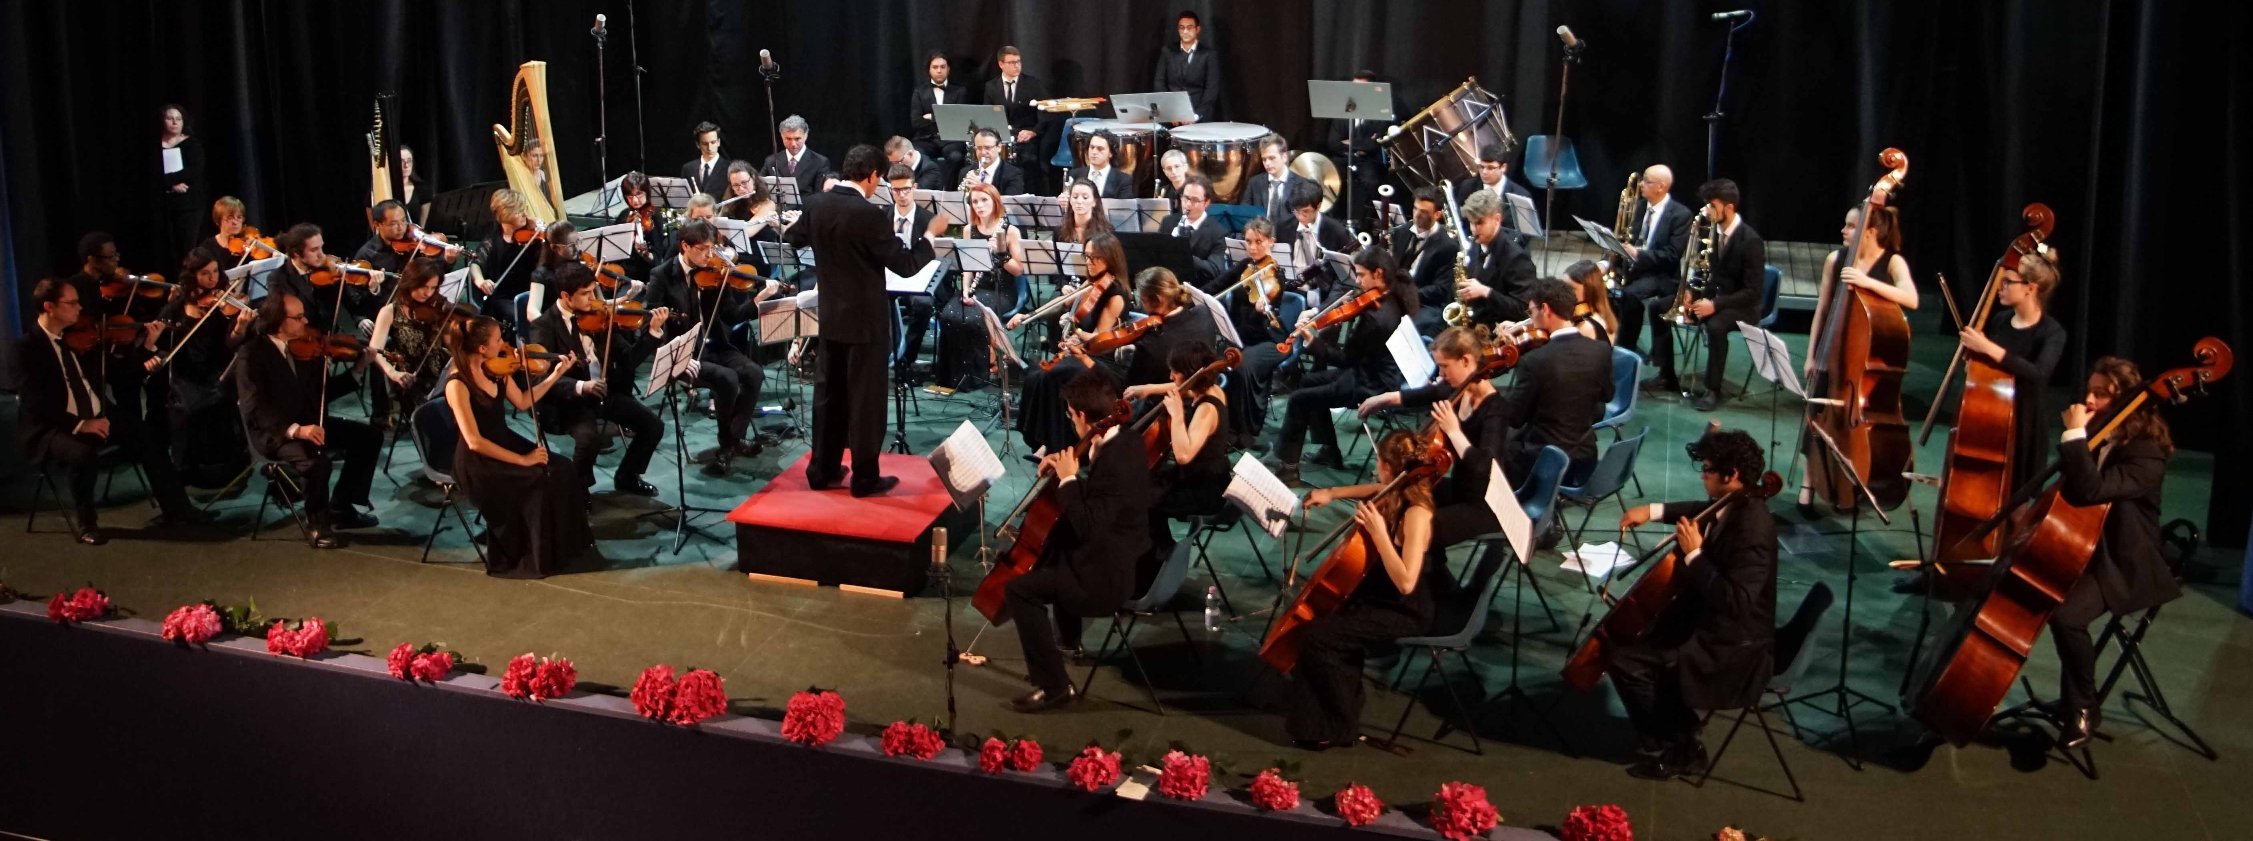 L’Orchestra sinfonica del Vivaldi al teatro Alessandrino